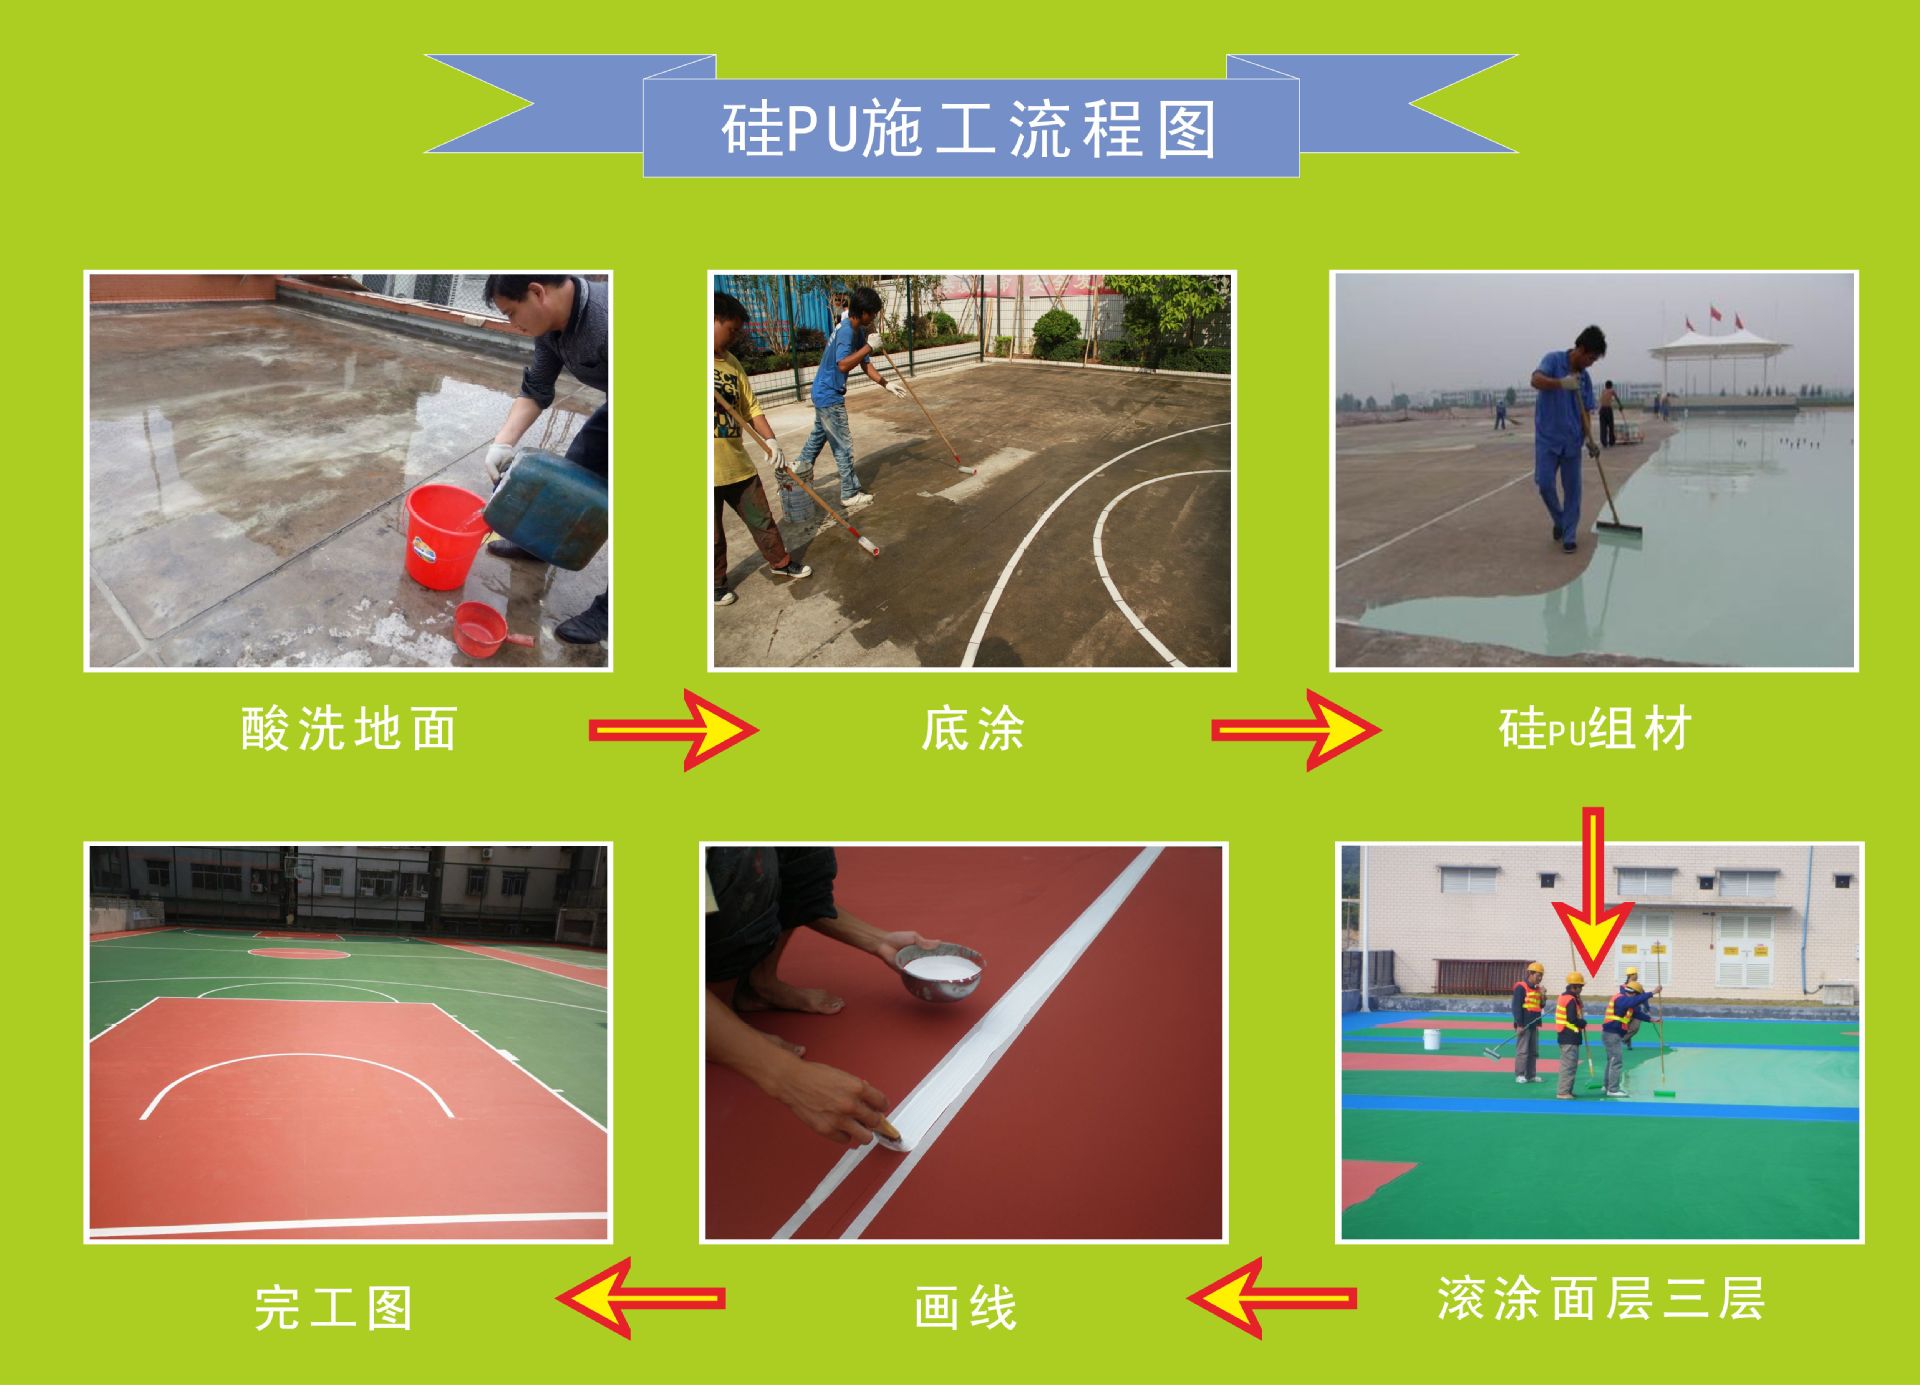 硅pu篮球场施工流程图片